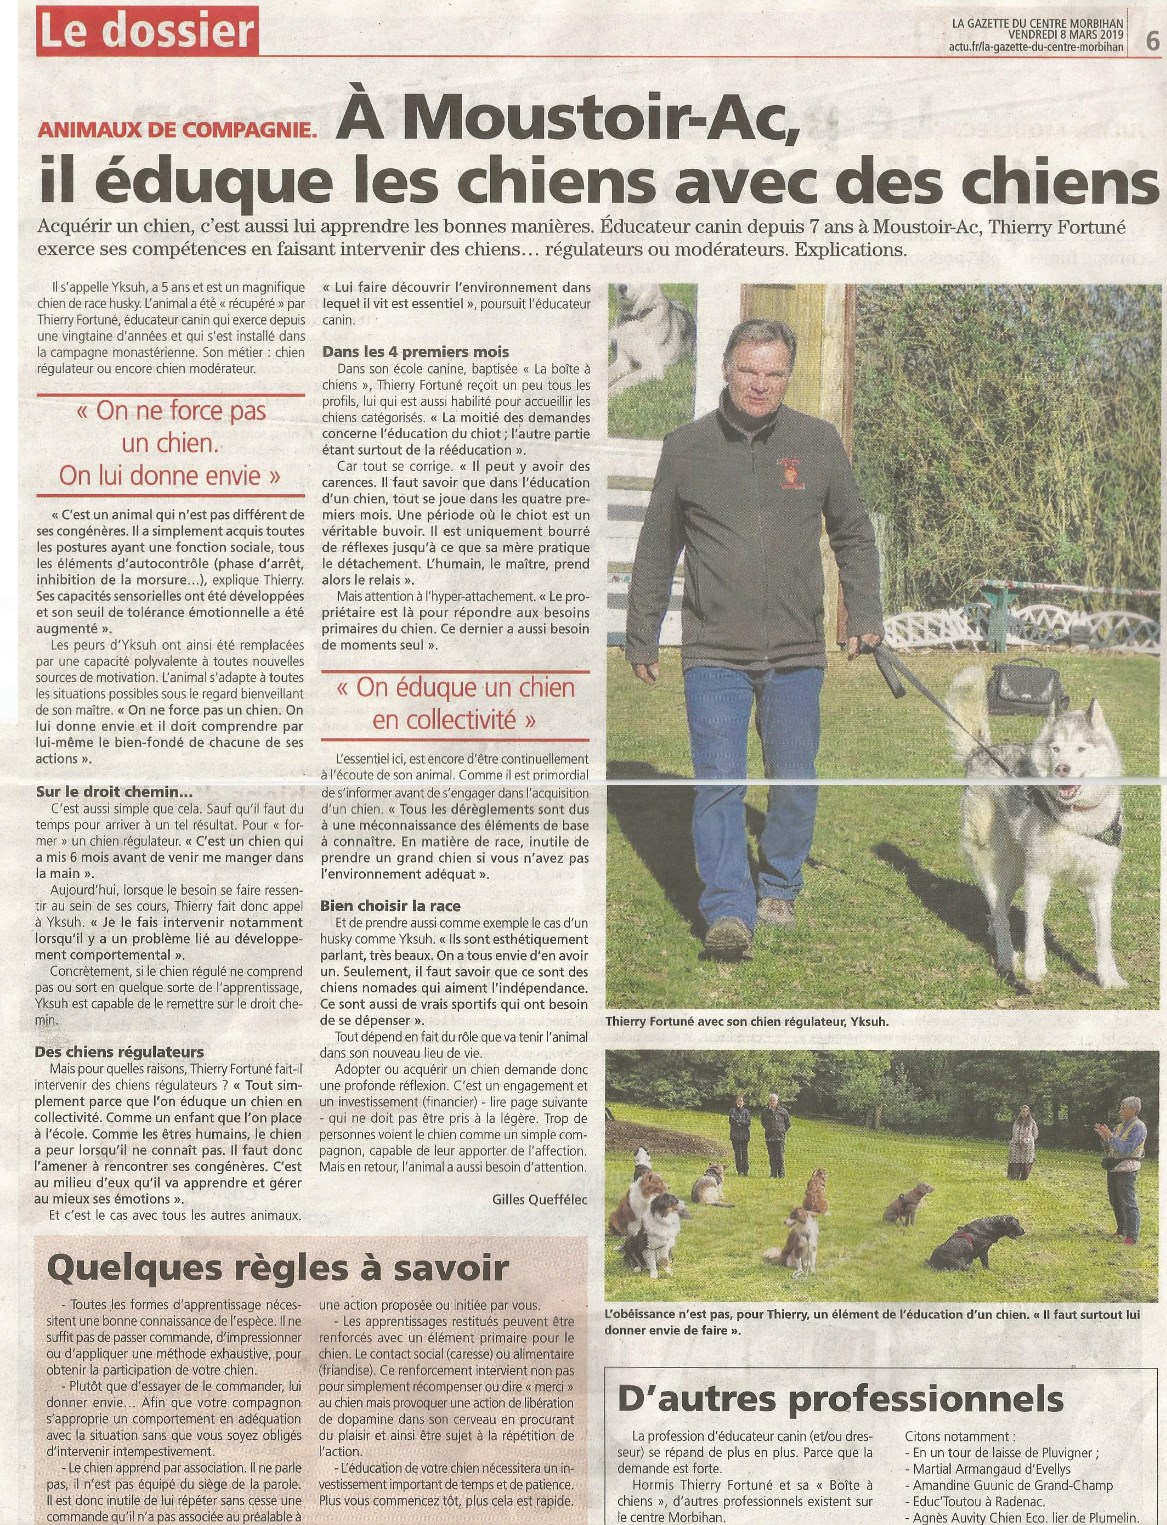 La Boite A Chiens Education Canine 56 Morbihan Vannes Locmine Auray